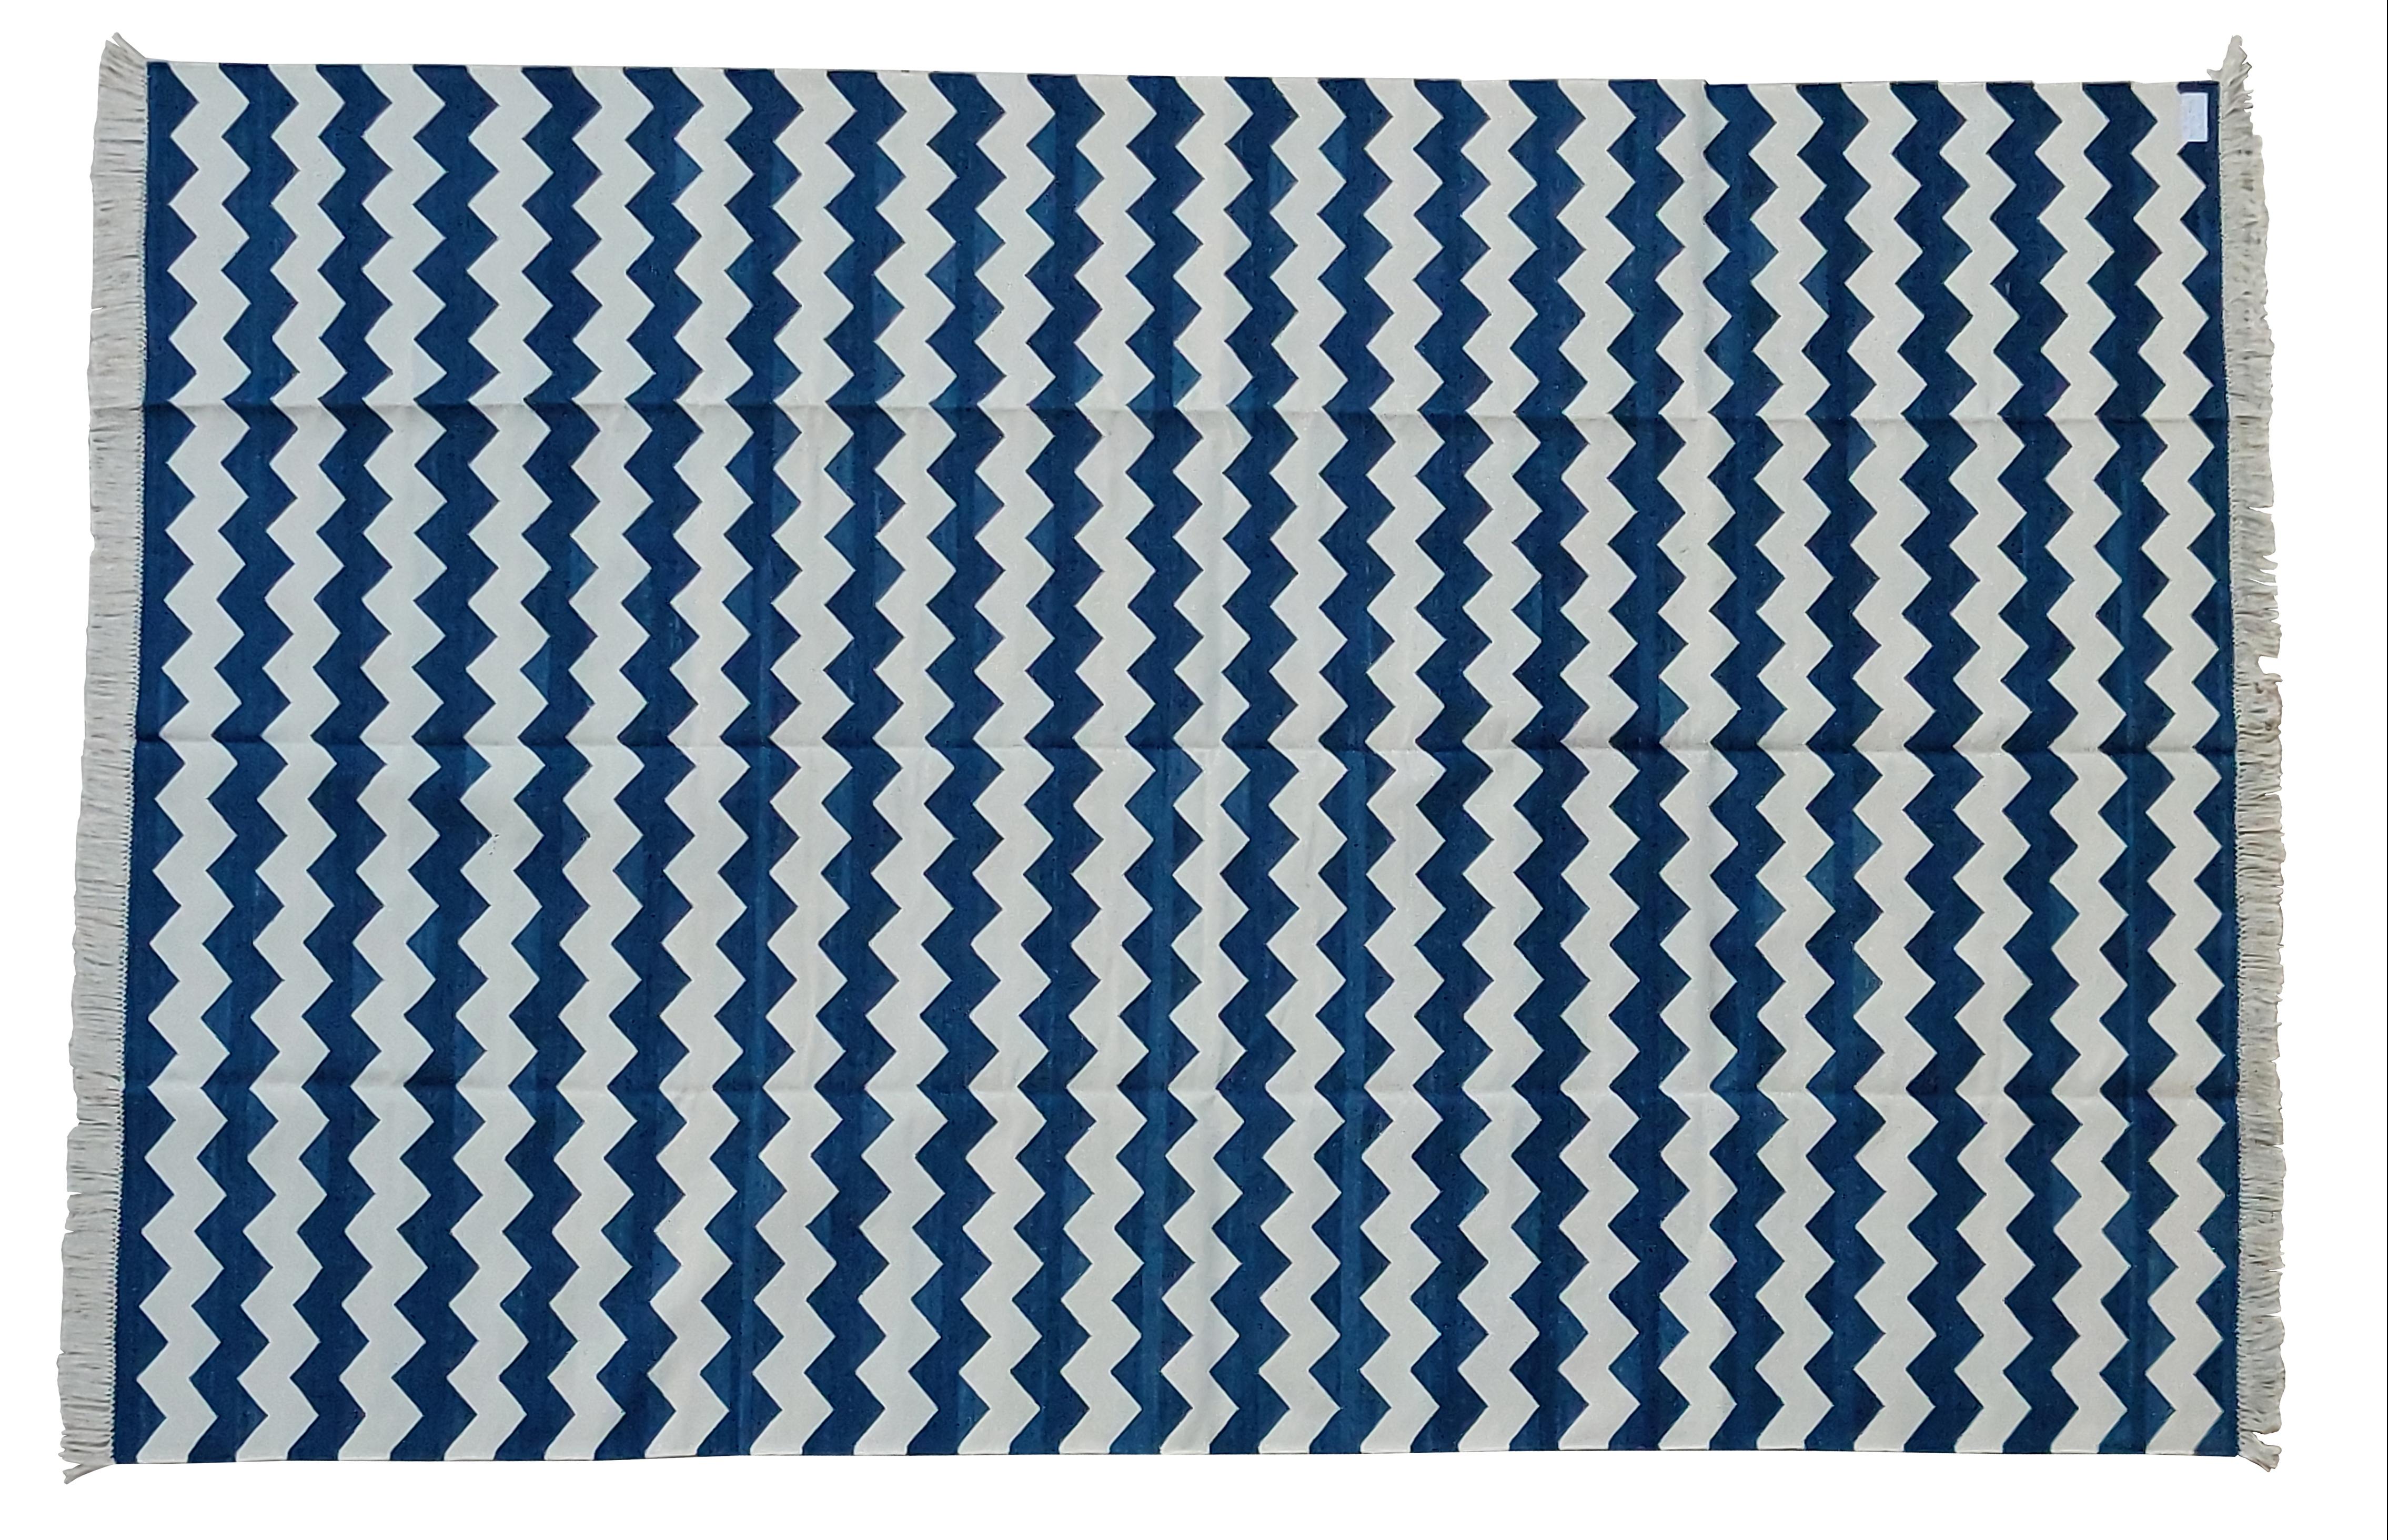 Baumwolle natürlich pflanzlich gefärbt, blau und weiß Zig Zag gestreiften indischen Teppich - 6'x9'
Diese speziellen flachgewebten Dhurries werden aus 15-fachem Garn aus 100% Baumwolle handgewebt. Aufgrund der speziellen Fertigungstechniken, die zur